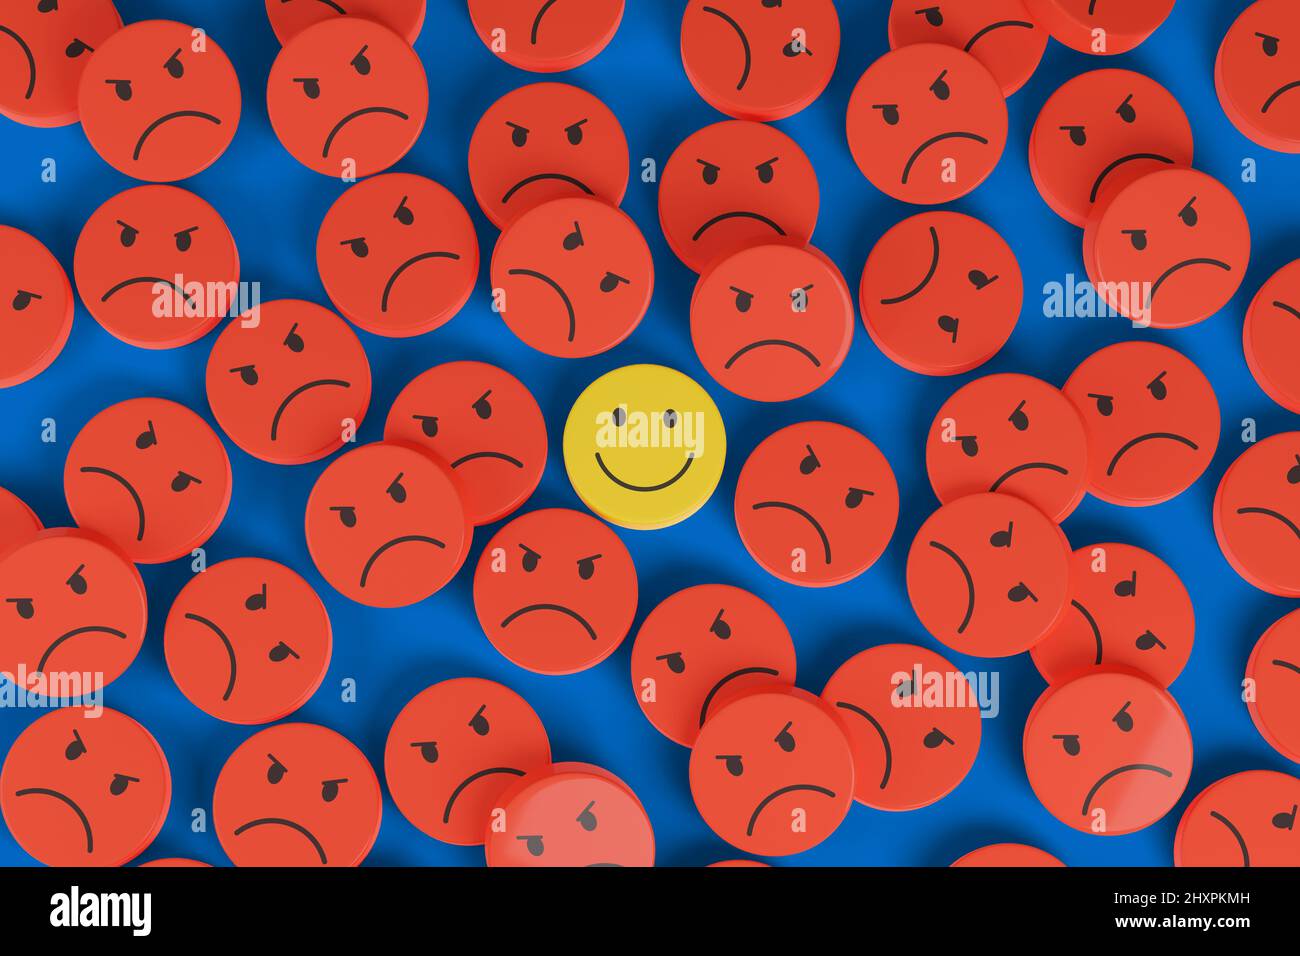 Cara feliz entre muchas otras caras enojadas. Concepto de actitud positiva. ilustración 3d. Foto de stock